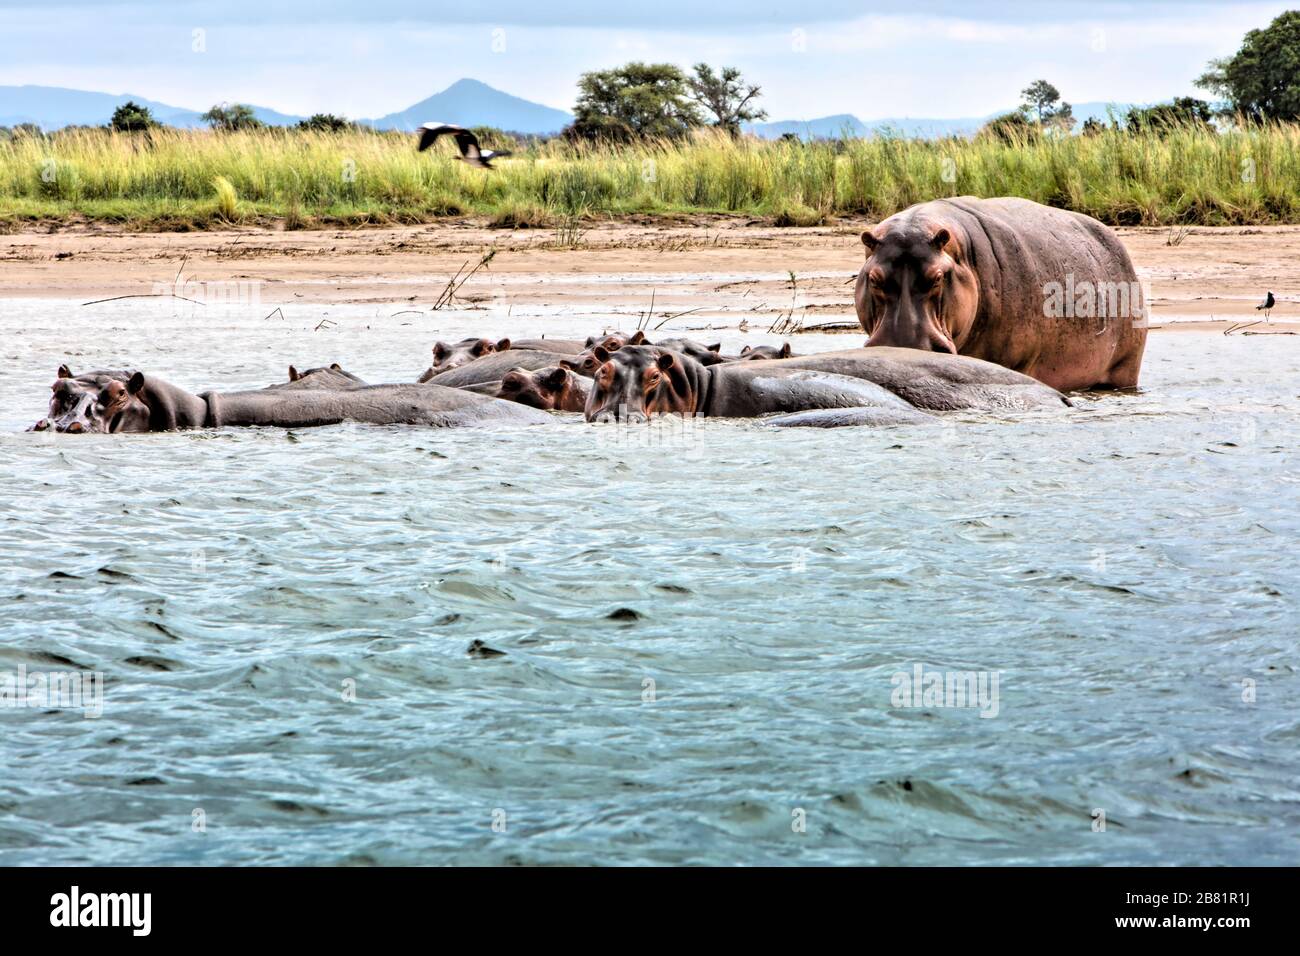 Eine Gruppe von halb untergetauchten Flusspferden kühlt sich im Wasser des Zambezi Flusses ab. Abgesehen von einem, der ein wenig neugieriger ist. Stockfoto